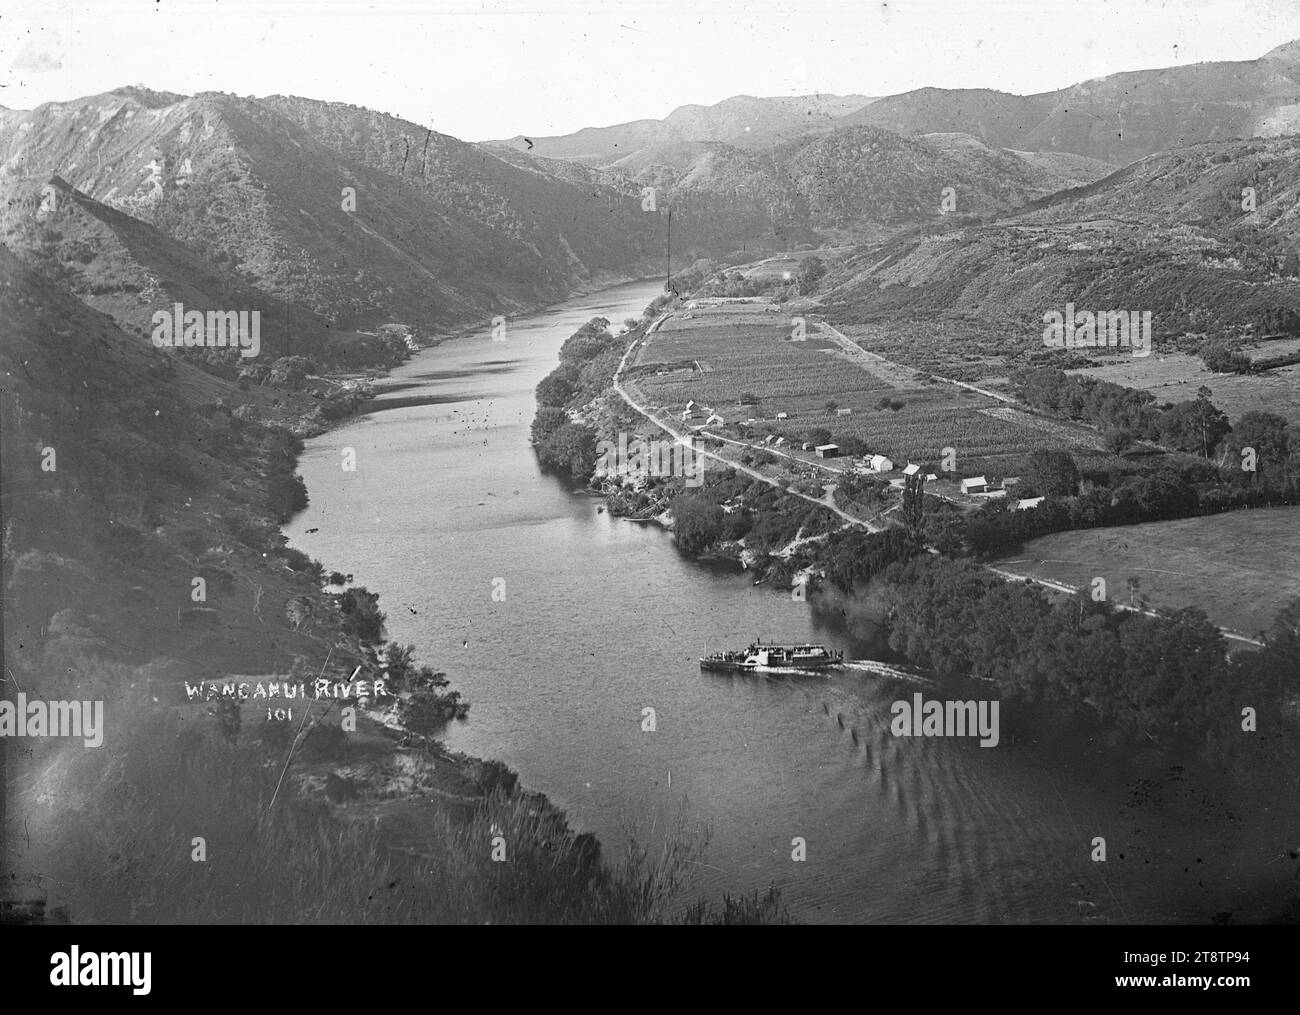 Blick hinunter auf den Whanganui River und die Stadt Kaiwhaiki, Blick hinunter auf den Whanganui River und die Stadt Kaiwhaiki, ca. 1910. Zeigt eine Paddeldampfer-Fähre mit Passagieren Stockfoto